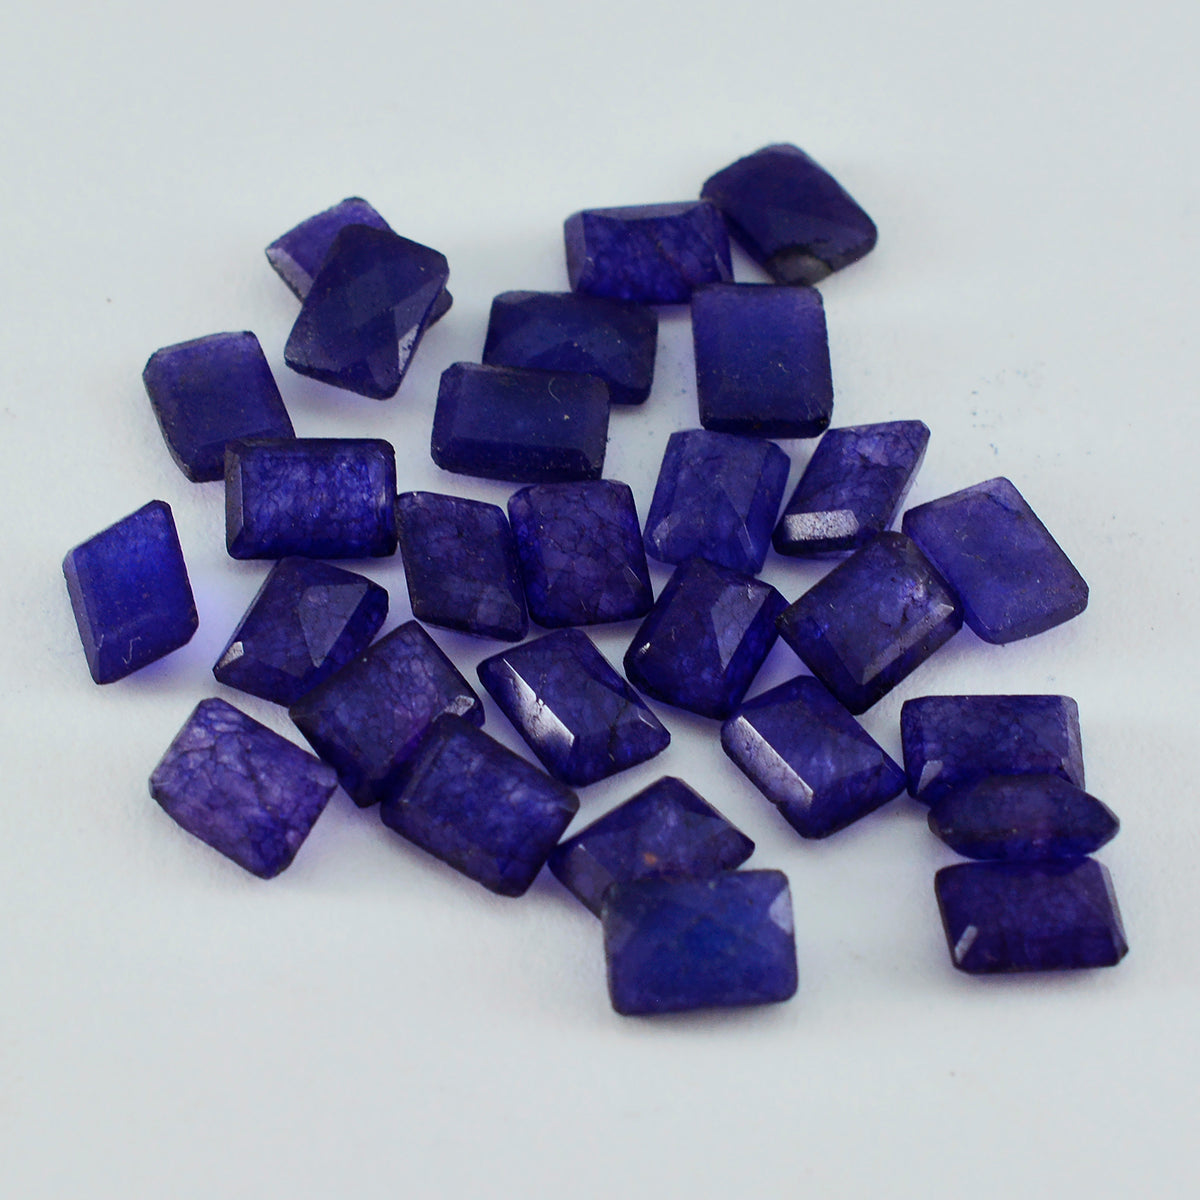 Riyogems 1 Stück natürlicher blauer Jaspis, facettiert, 4 x 6 mm, Achteckform, hübsche, hochwertige lose Edelsteine